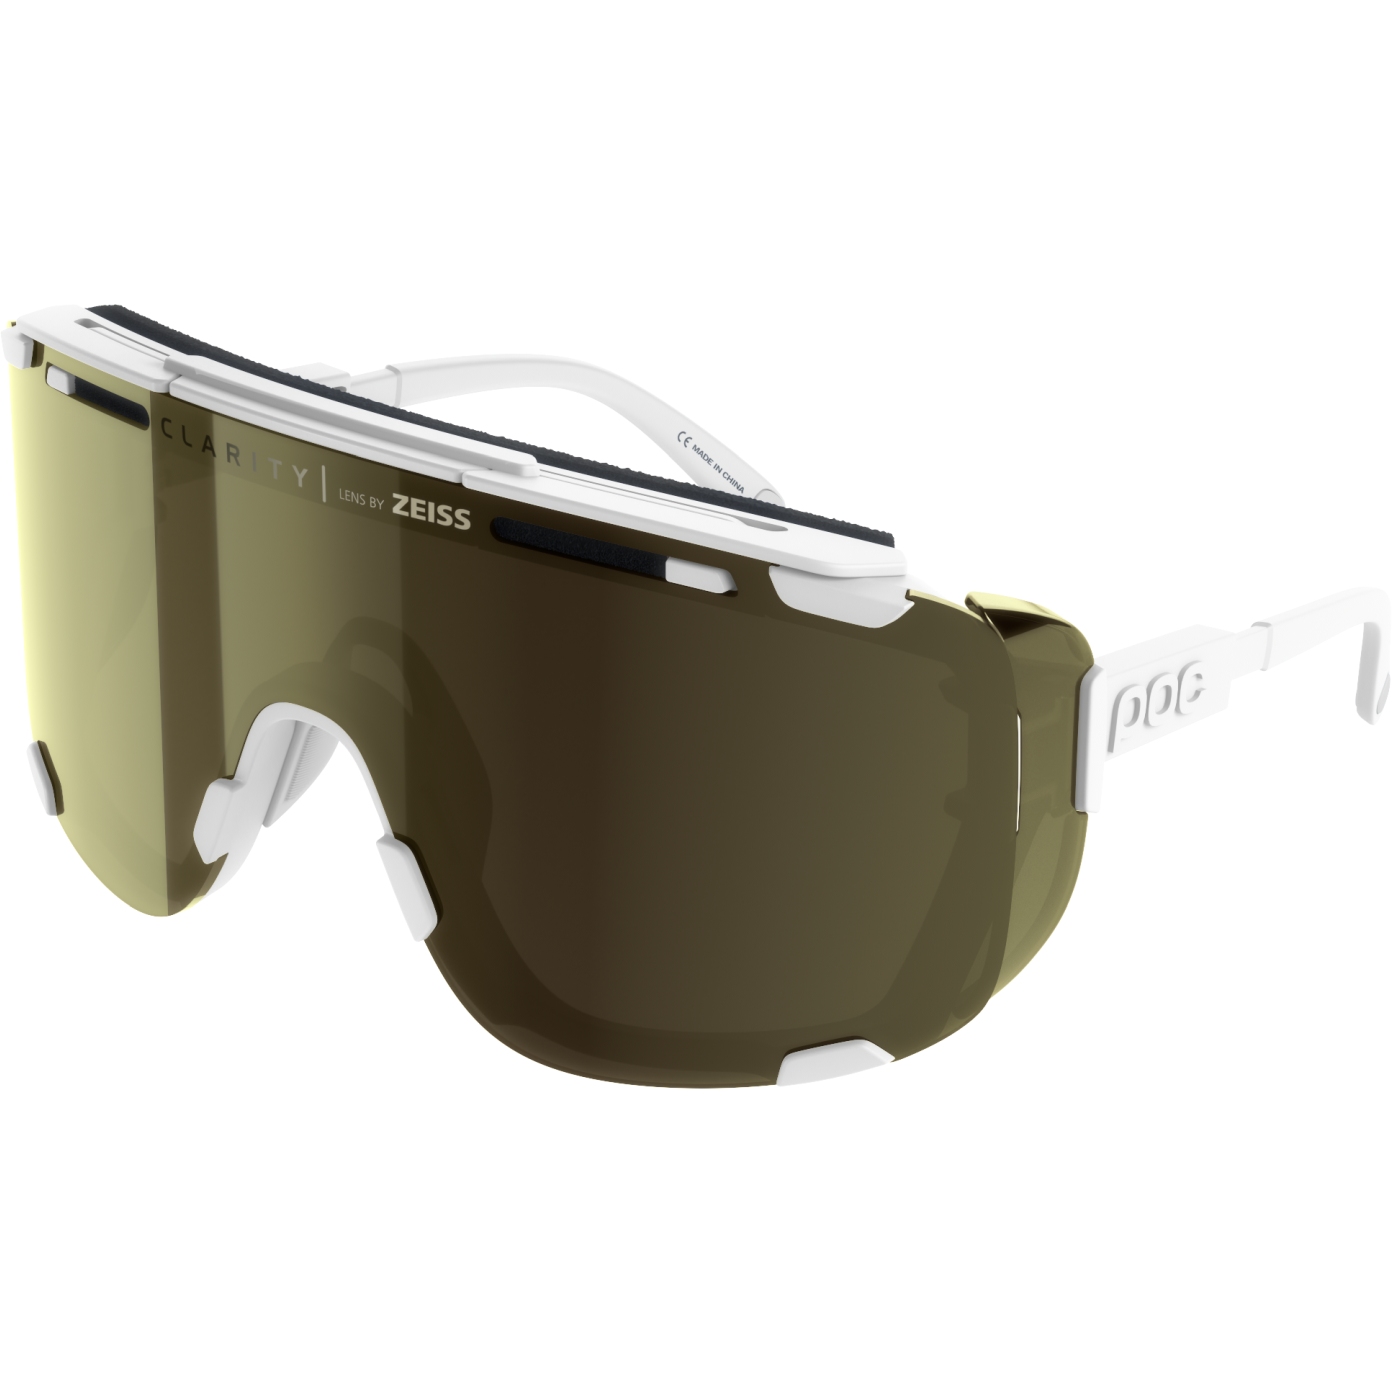 Productfoto van POC Devour Glacial Glasses - Clarity Define Spektris Amber - 1001 Hydrogen White